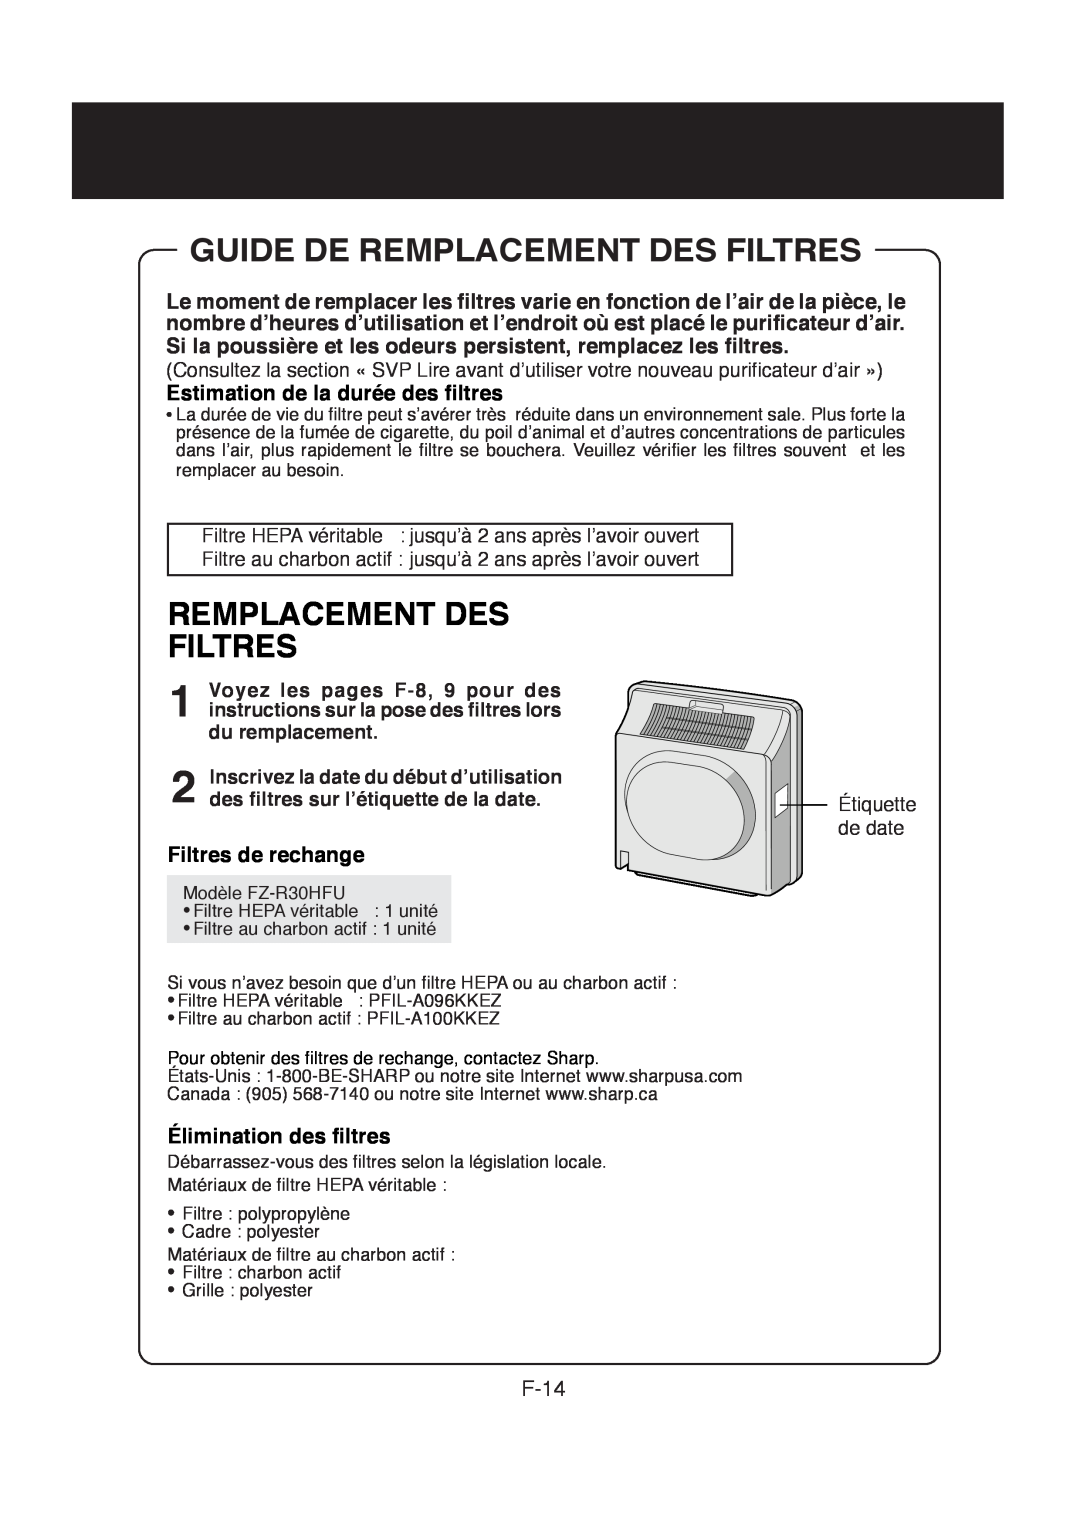 Sharp FP-R30CX Guide De Remplacement Des Filtres, Estimation de la durée des filtres, Filtres de rechange, F-14 